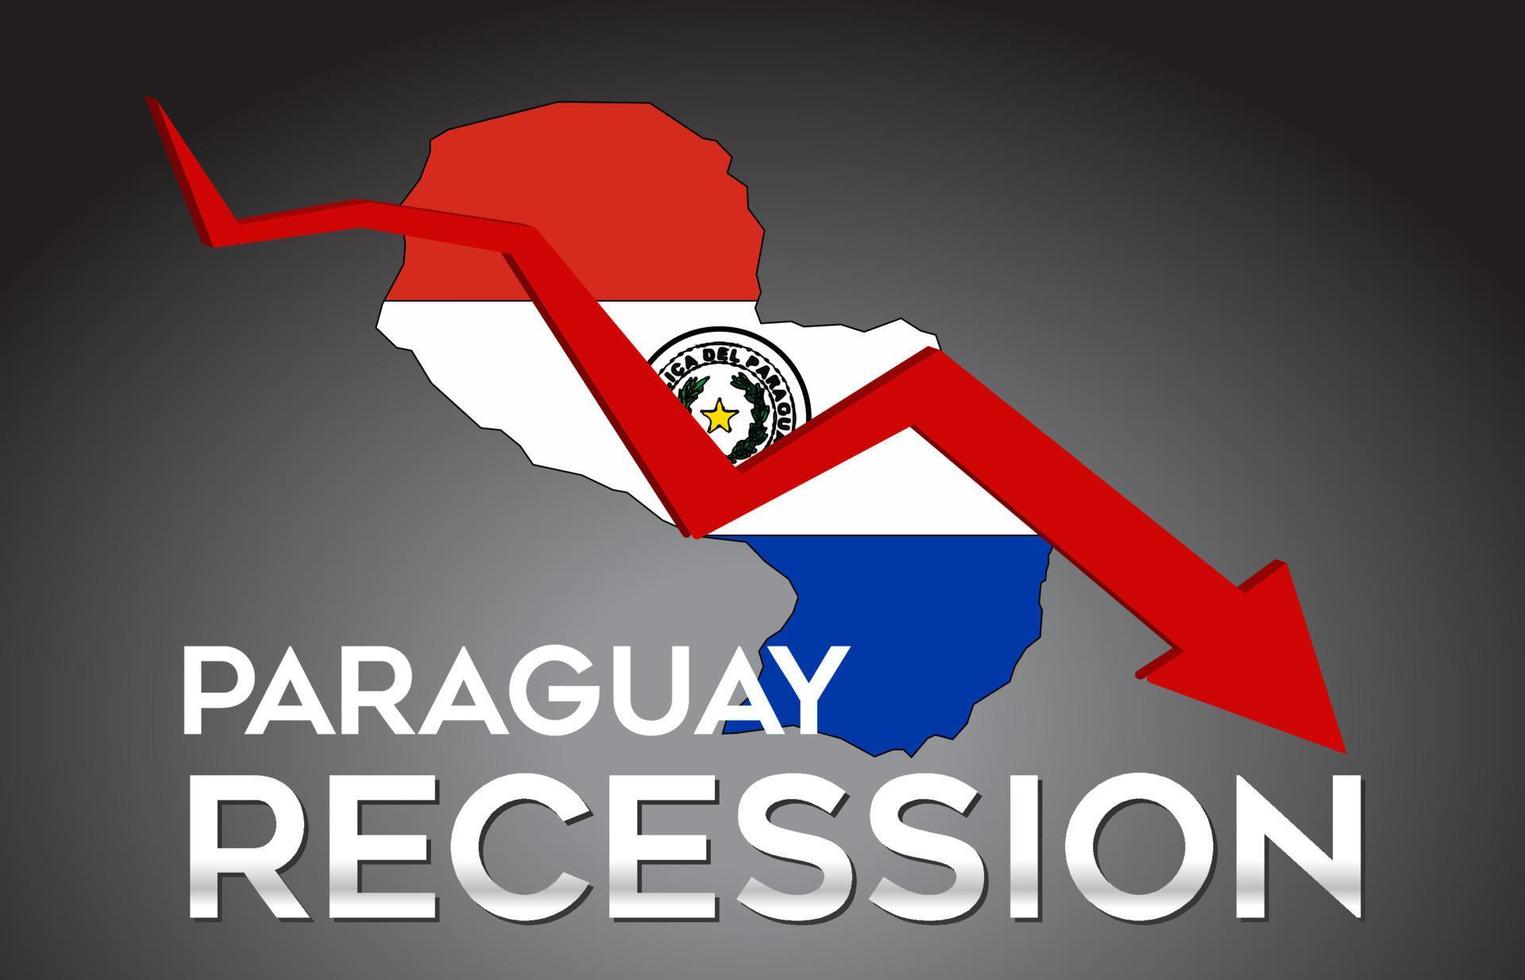 mappa del paraguay recessione crisi economica concetto creativo con freccia di crash economico. vettore